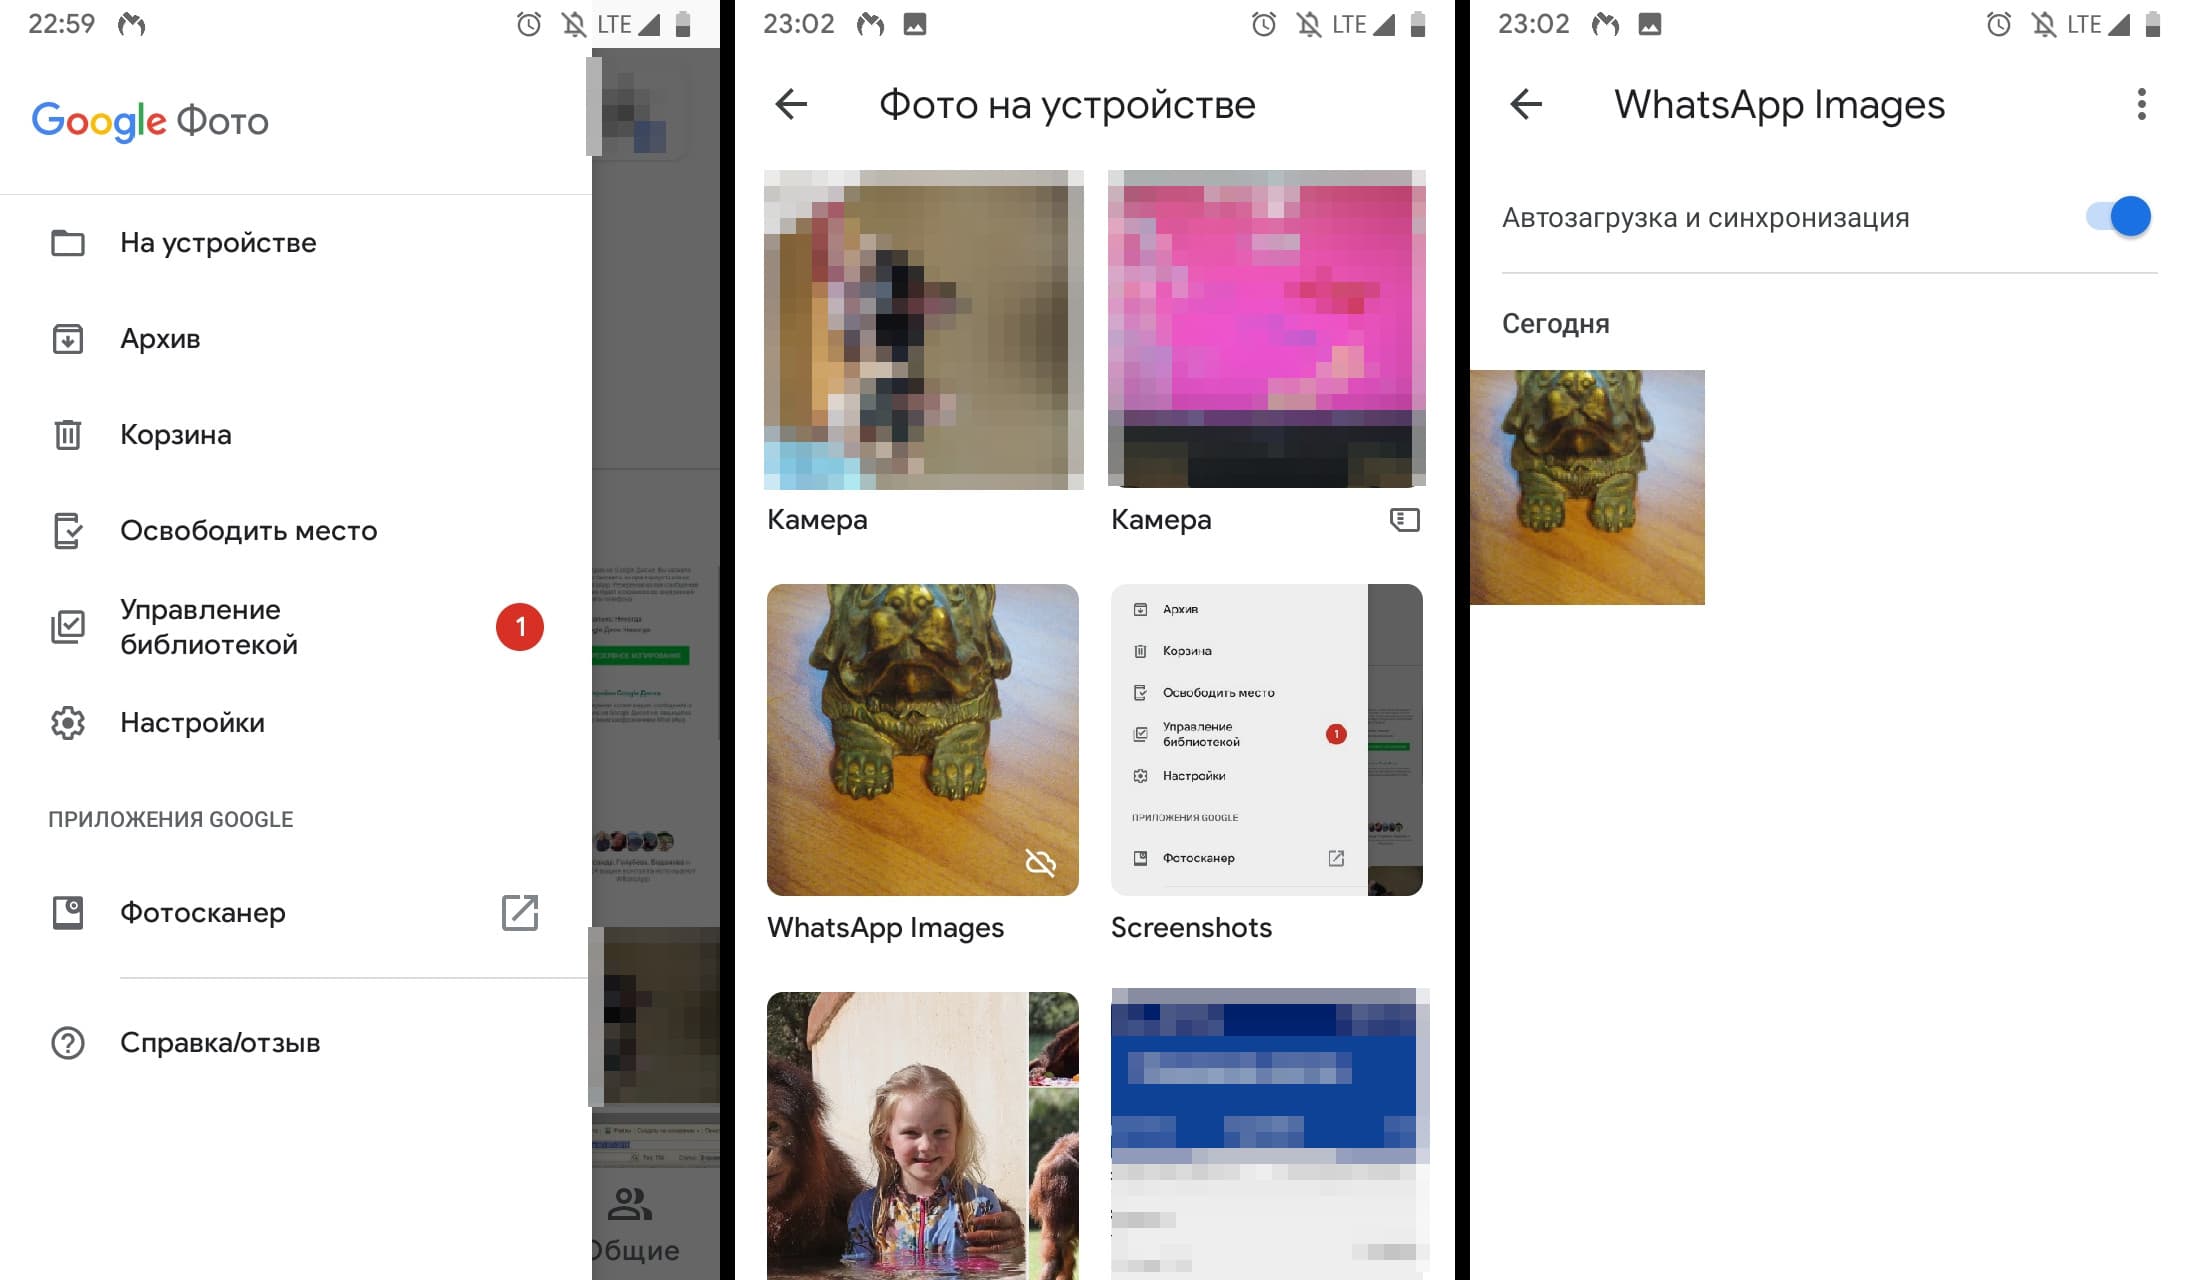 Как сделать резервную копию фотографий WhatsApp в Google Фото и текстов в Google Drive